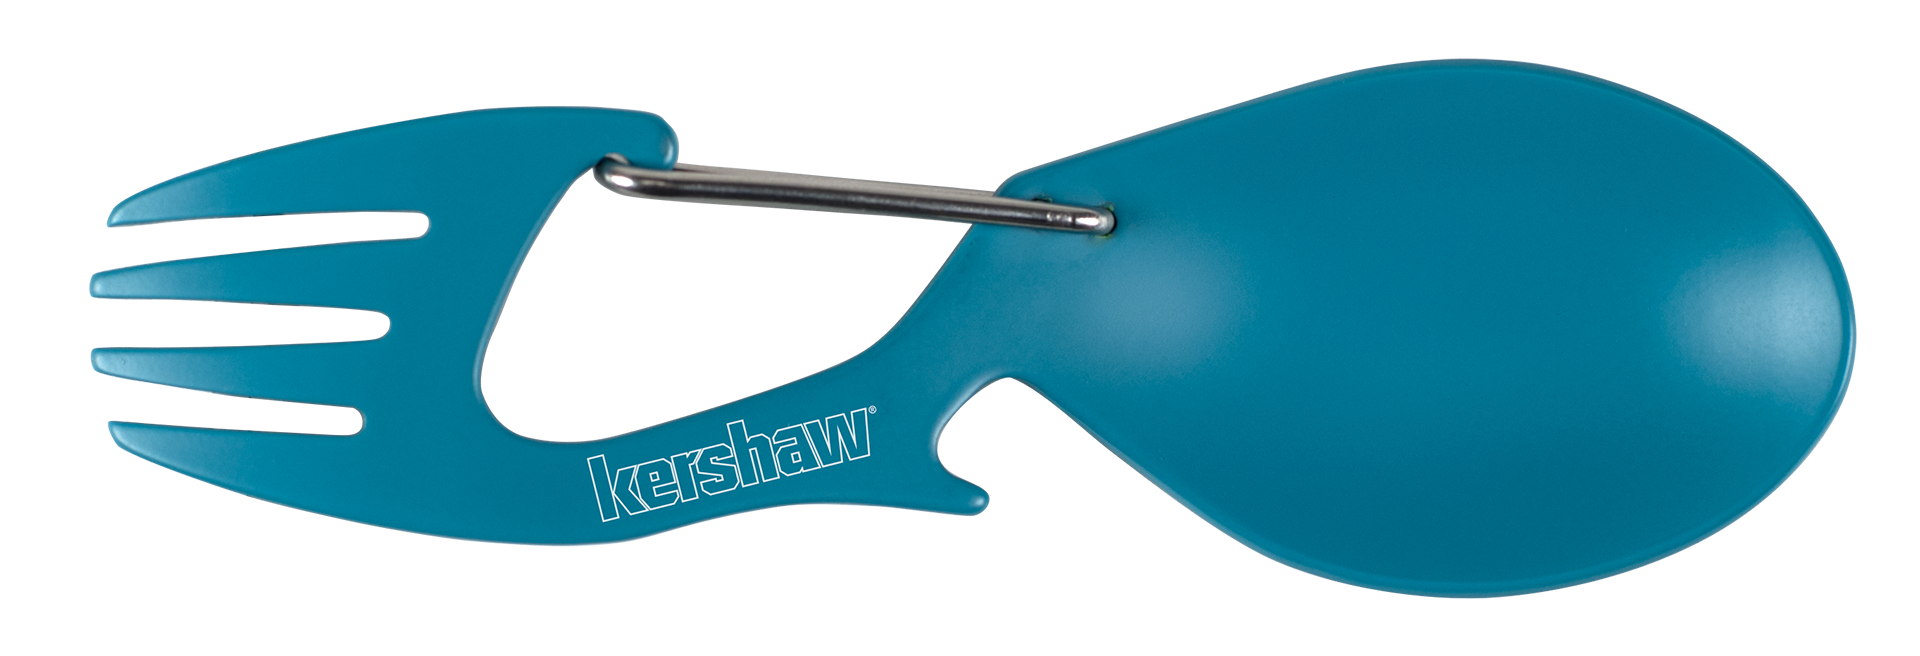 Kershaw Ration - Stainless Steel Spork Multi-Tool - Teal - 1140TEAL